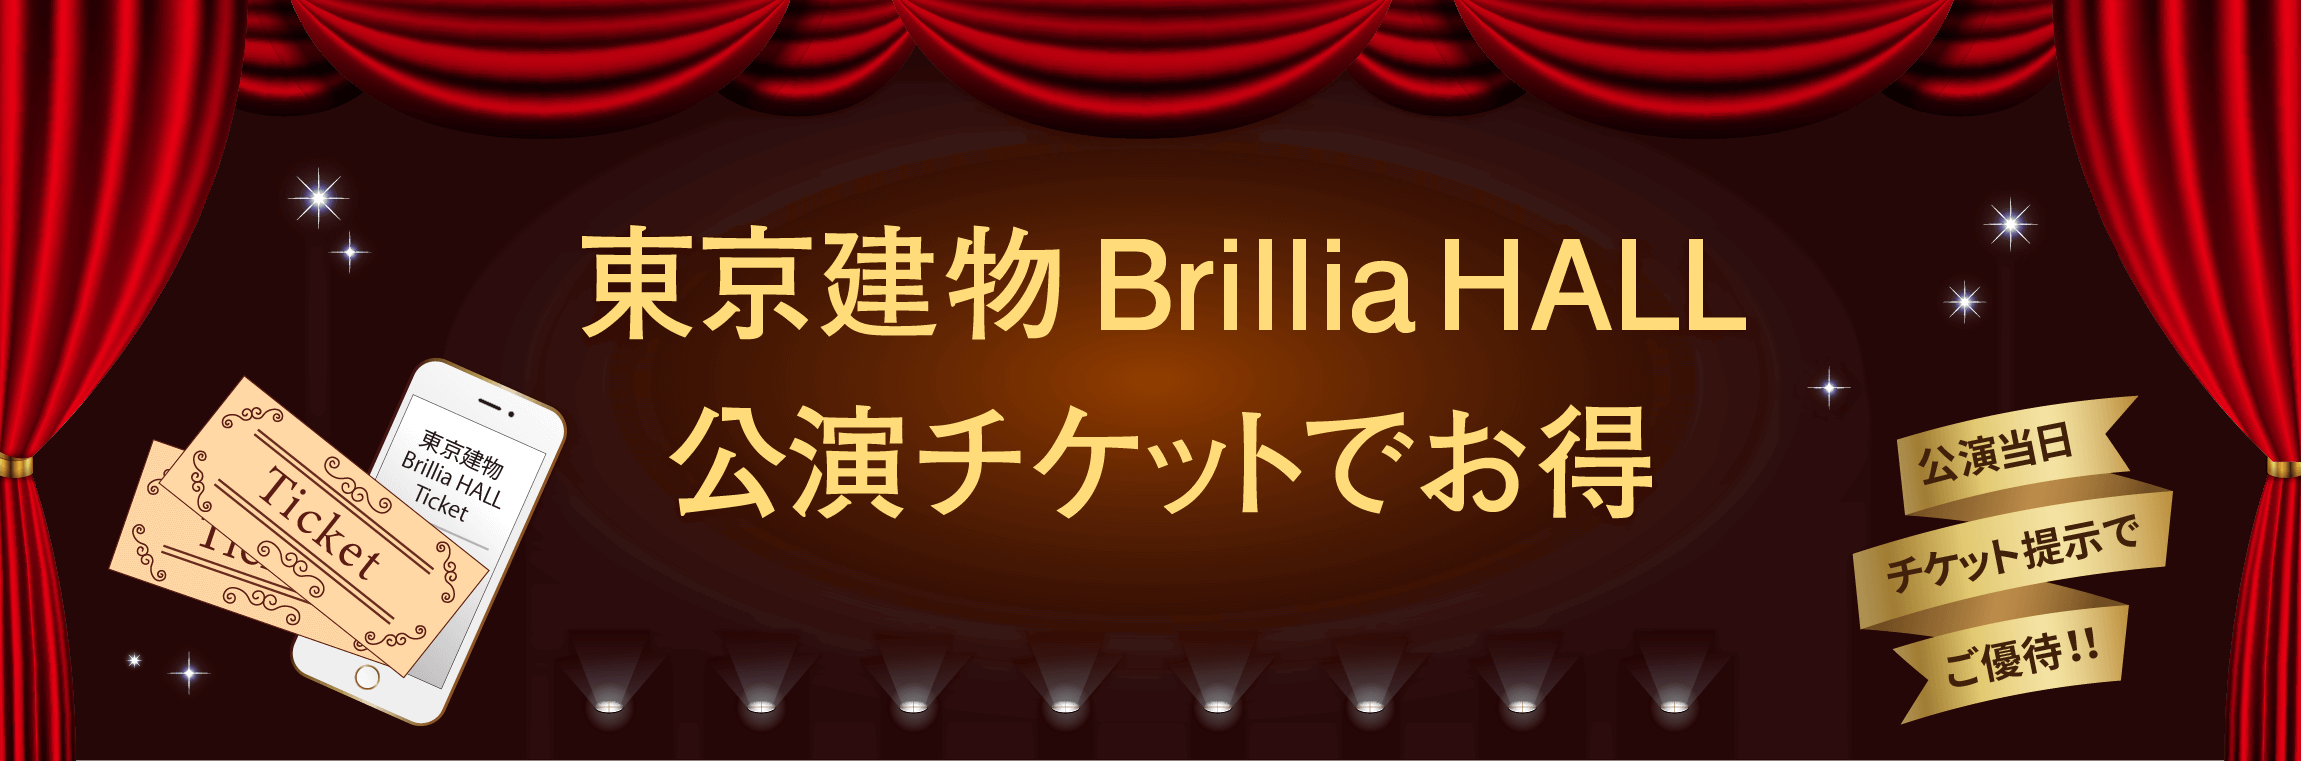 WACCA池袋 × 東京建物 Brillia HALL 公演チケットでお得